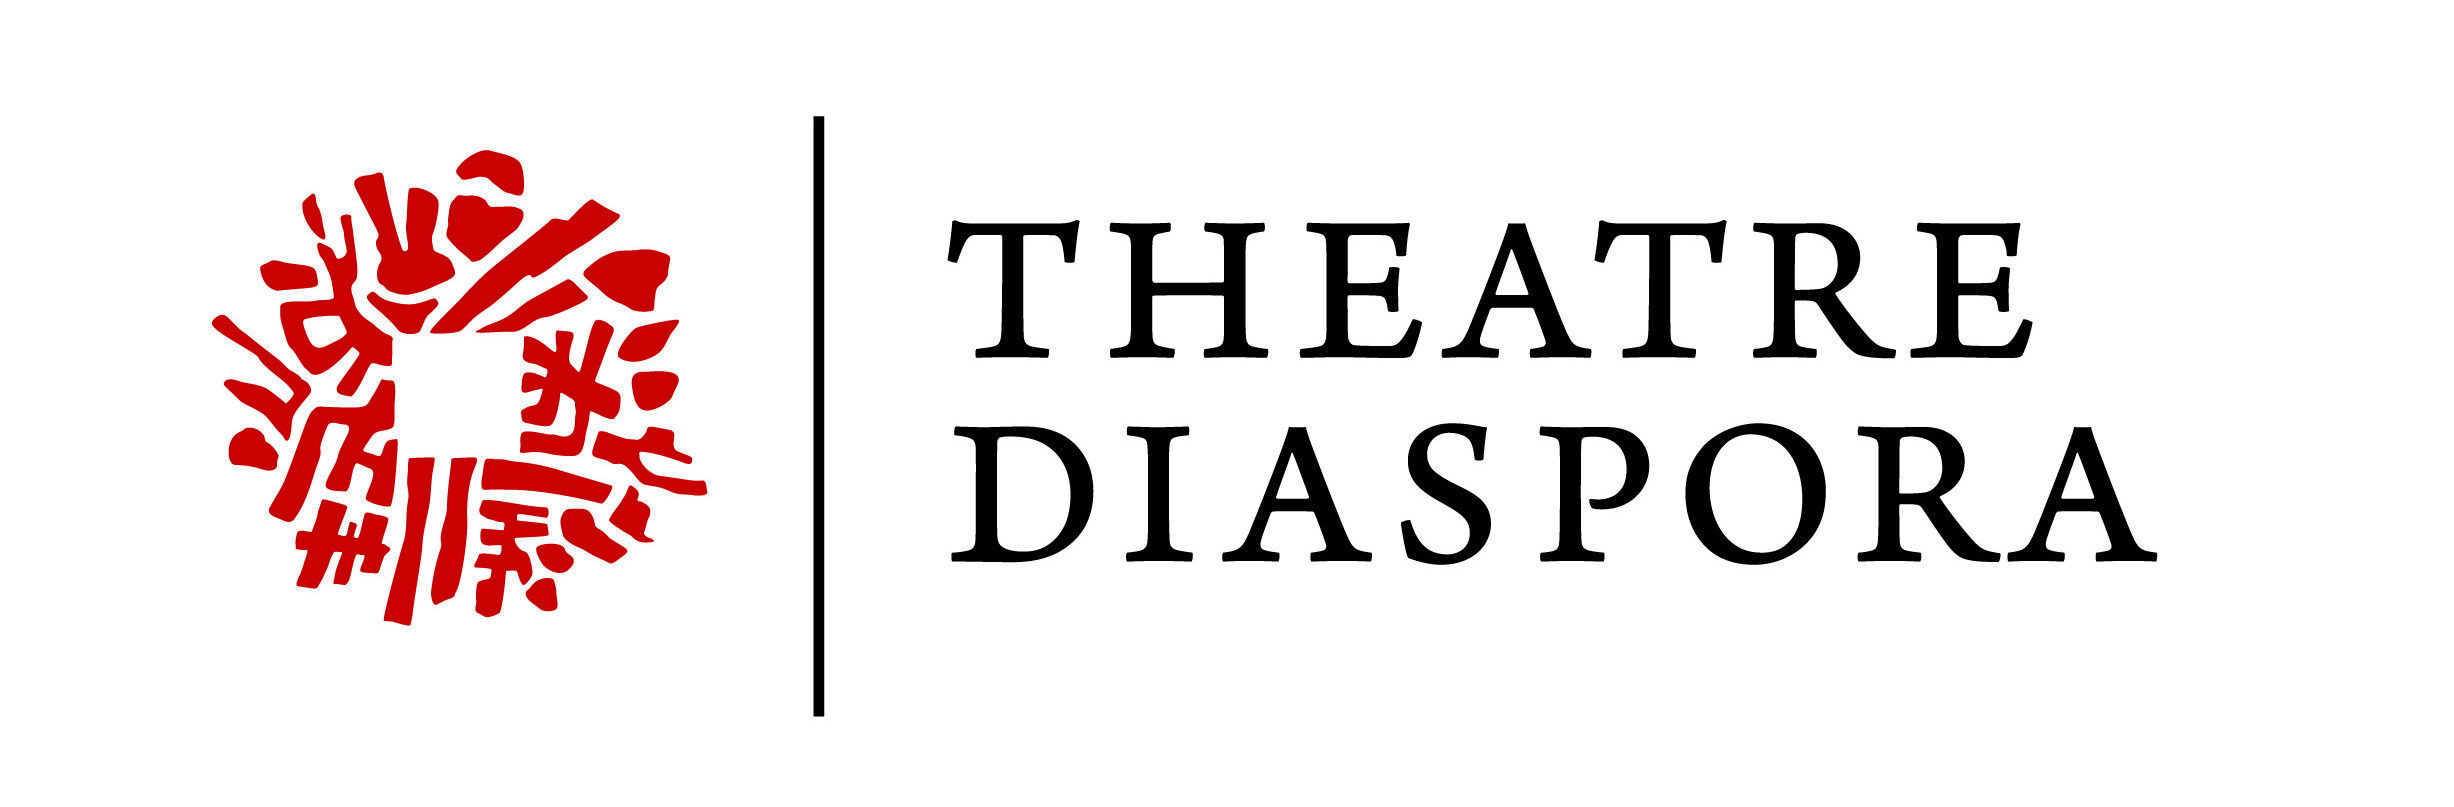 Theatre Diaspora logo